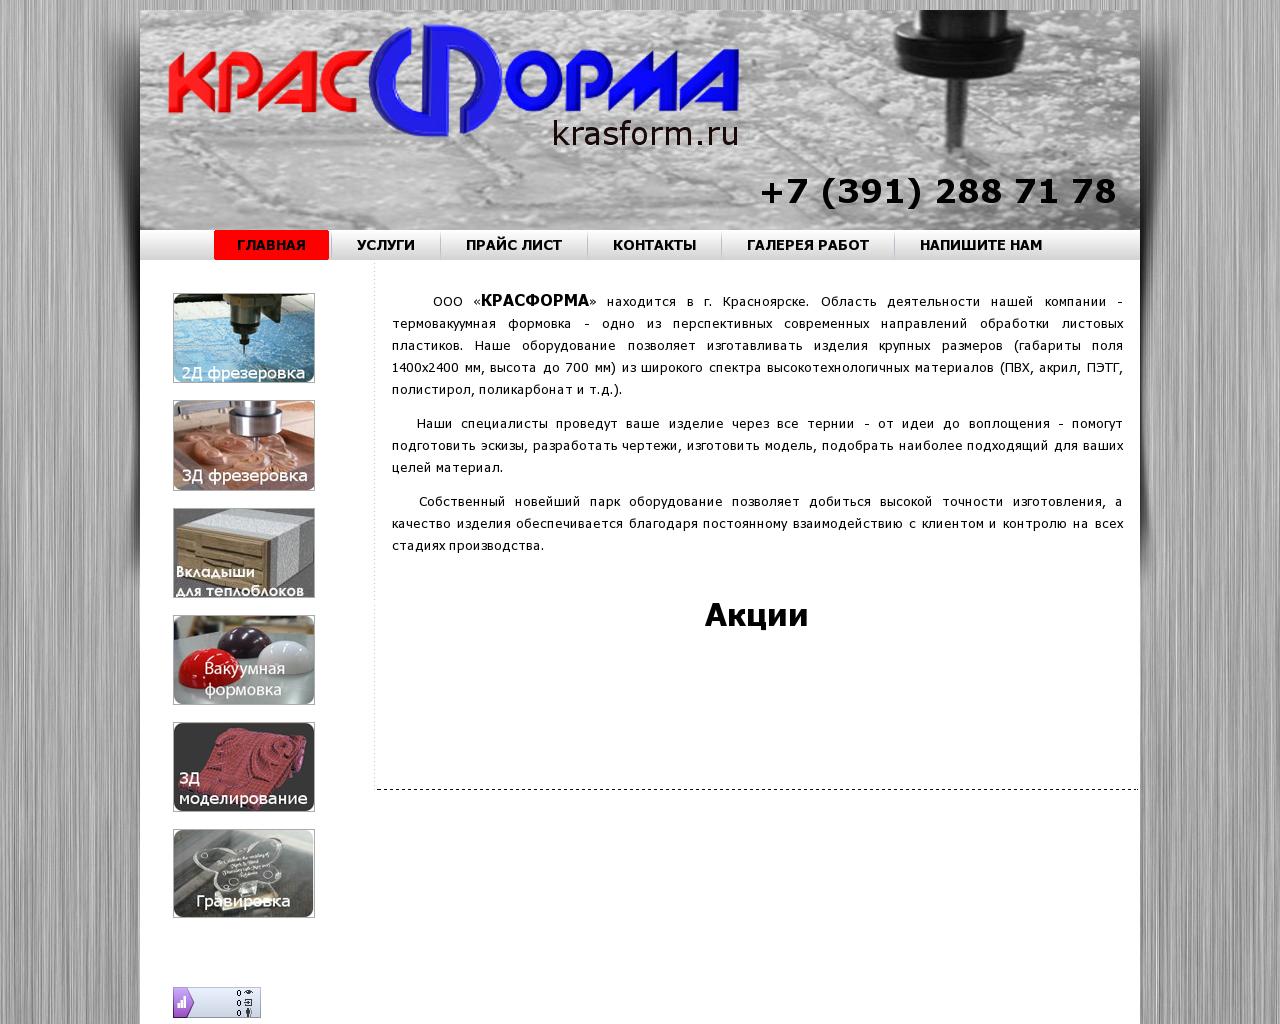 Изображение сайта krasform.ru в разрешении 1280x1024